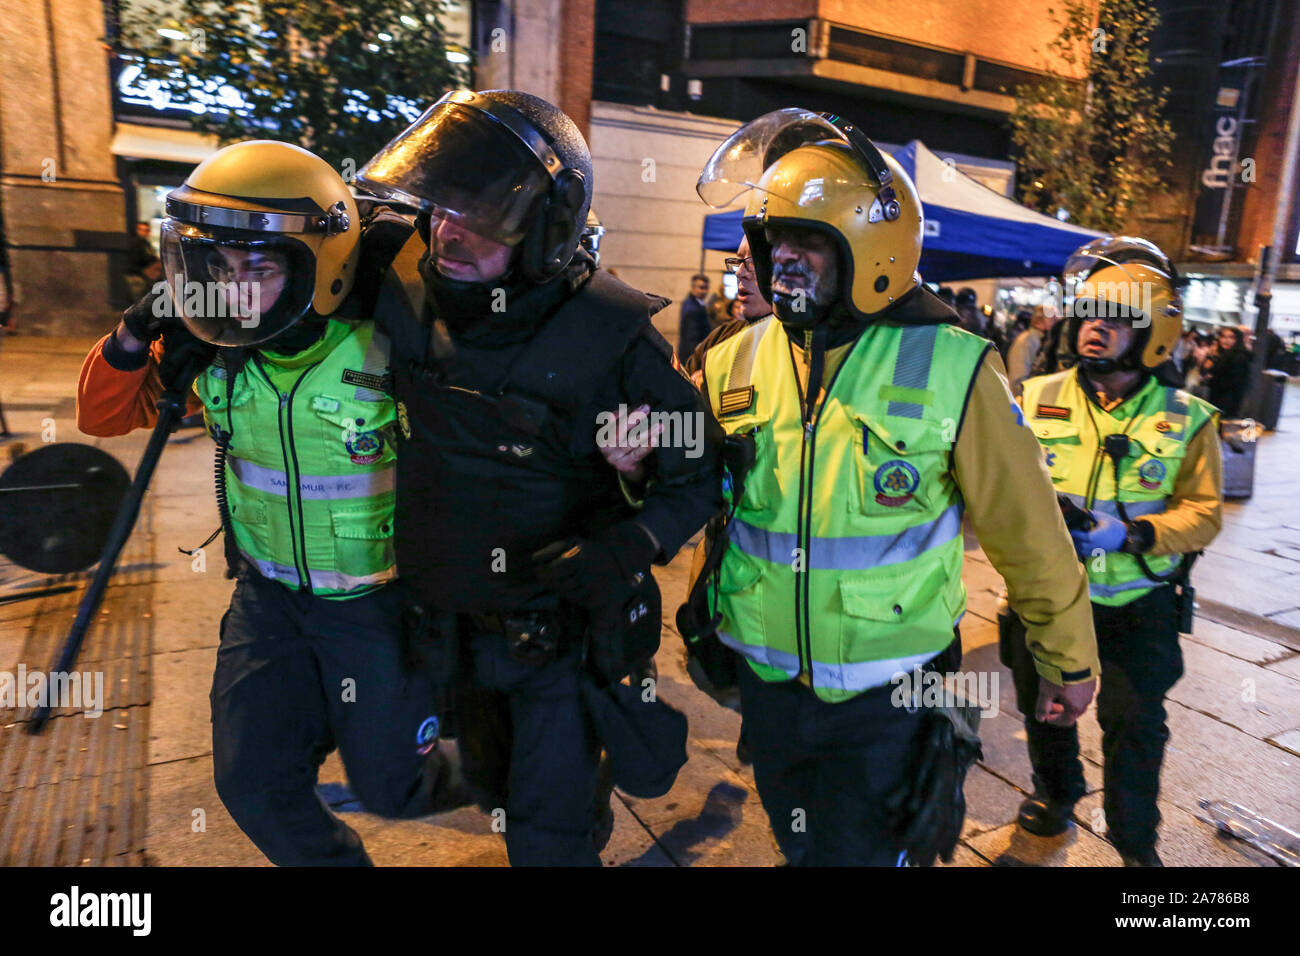 Ein verwundeter Polizist von sanitätern während der Auseinandersetzungen. Hunderte von linken Demonstranten mit der Polizei aneinandergeraten nach einem pazifischen Kundgebung gegen das Oberste Gericht Satz der Katalanischen Politik und Aktivisten. Sie waren mehr als zehn Festnahmen und einige Polizisten wurden verletzt. In einem Versuch der Neuerstellung der gewalttätigen Ausschreitungen von Barcelona die Demonstranten bis Barrikaden in einigen Straßen der Innenstadt angesiedelt. Stockfoto